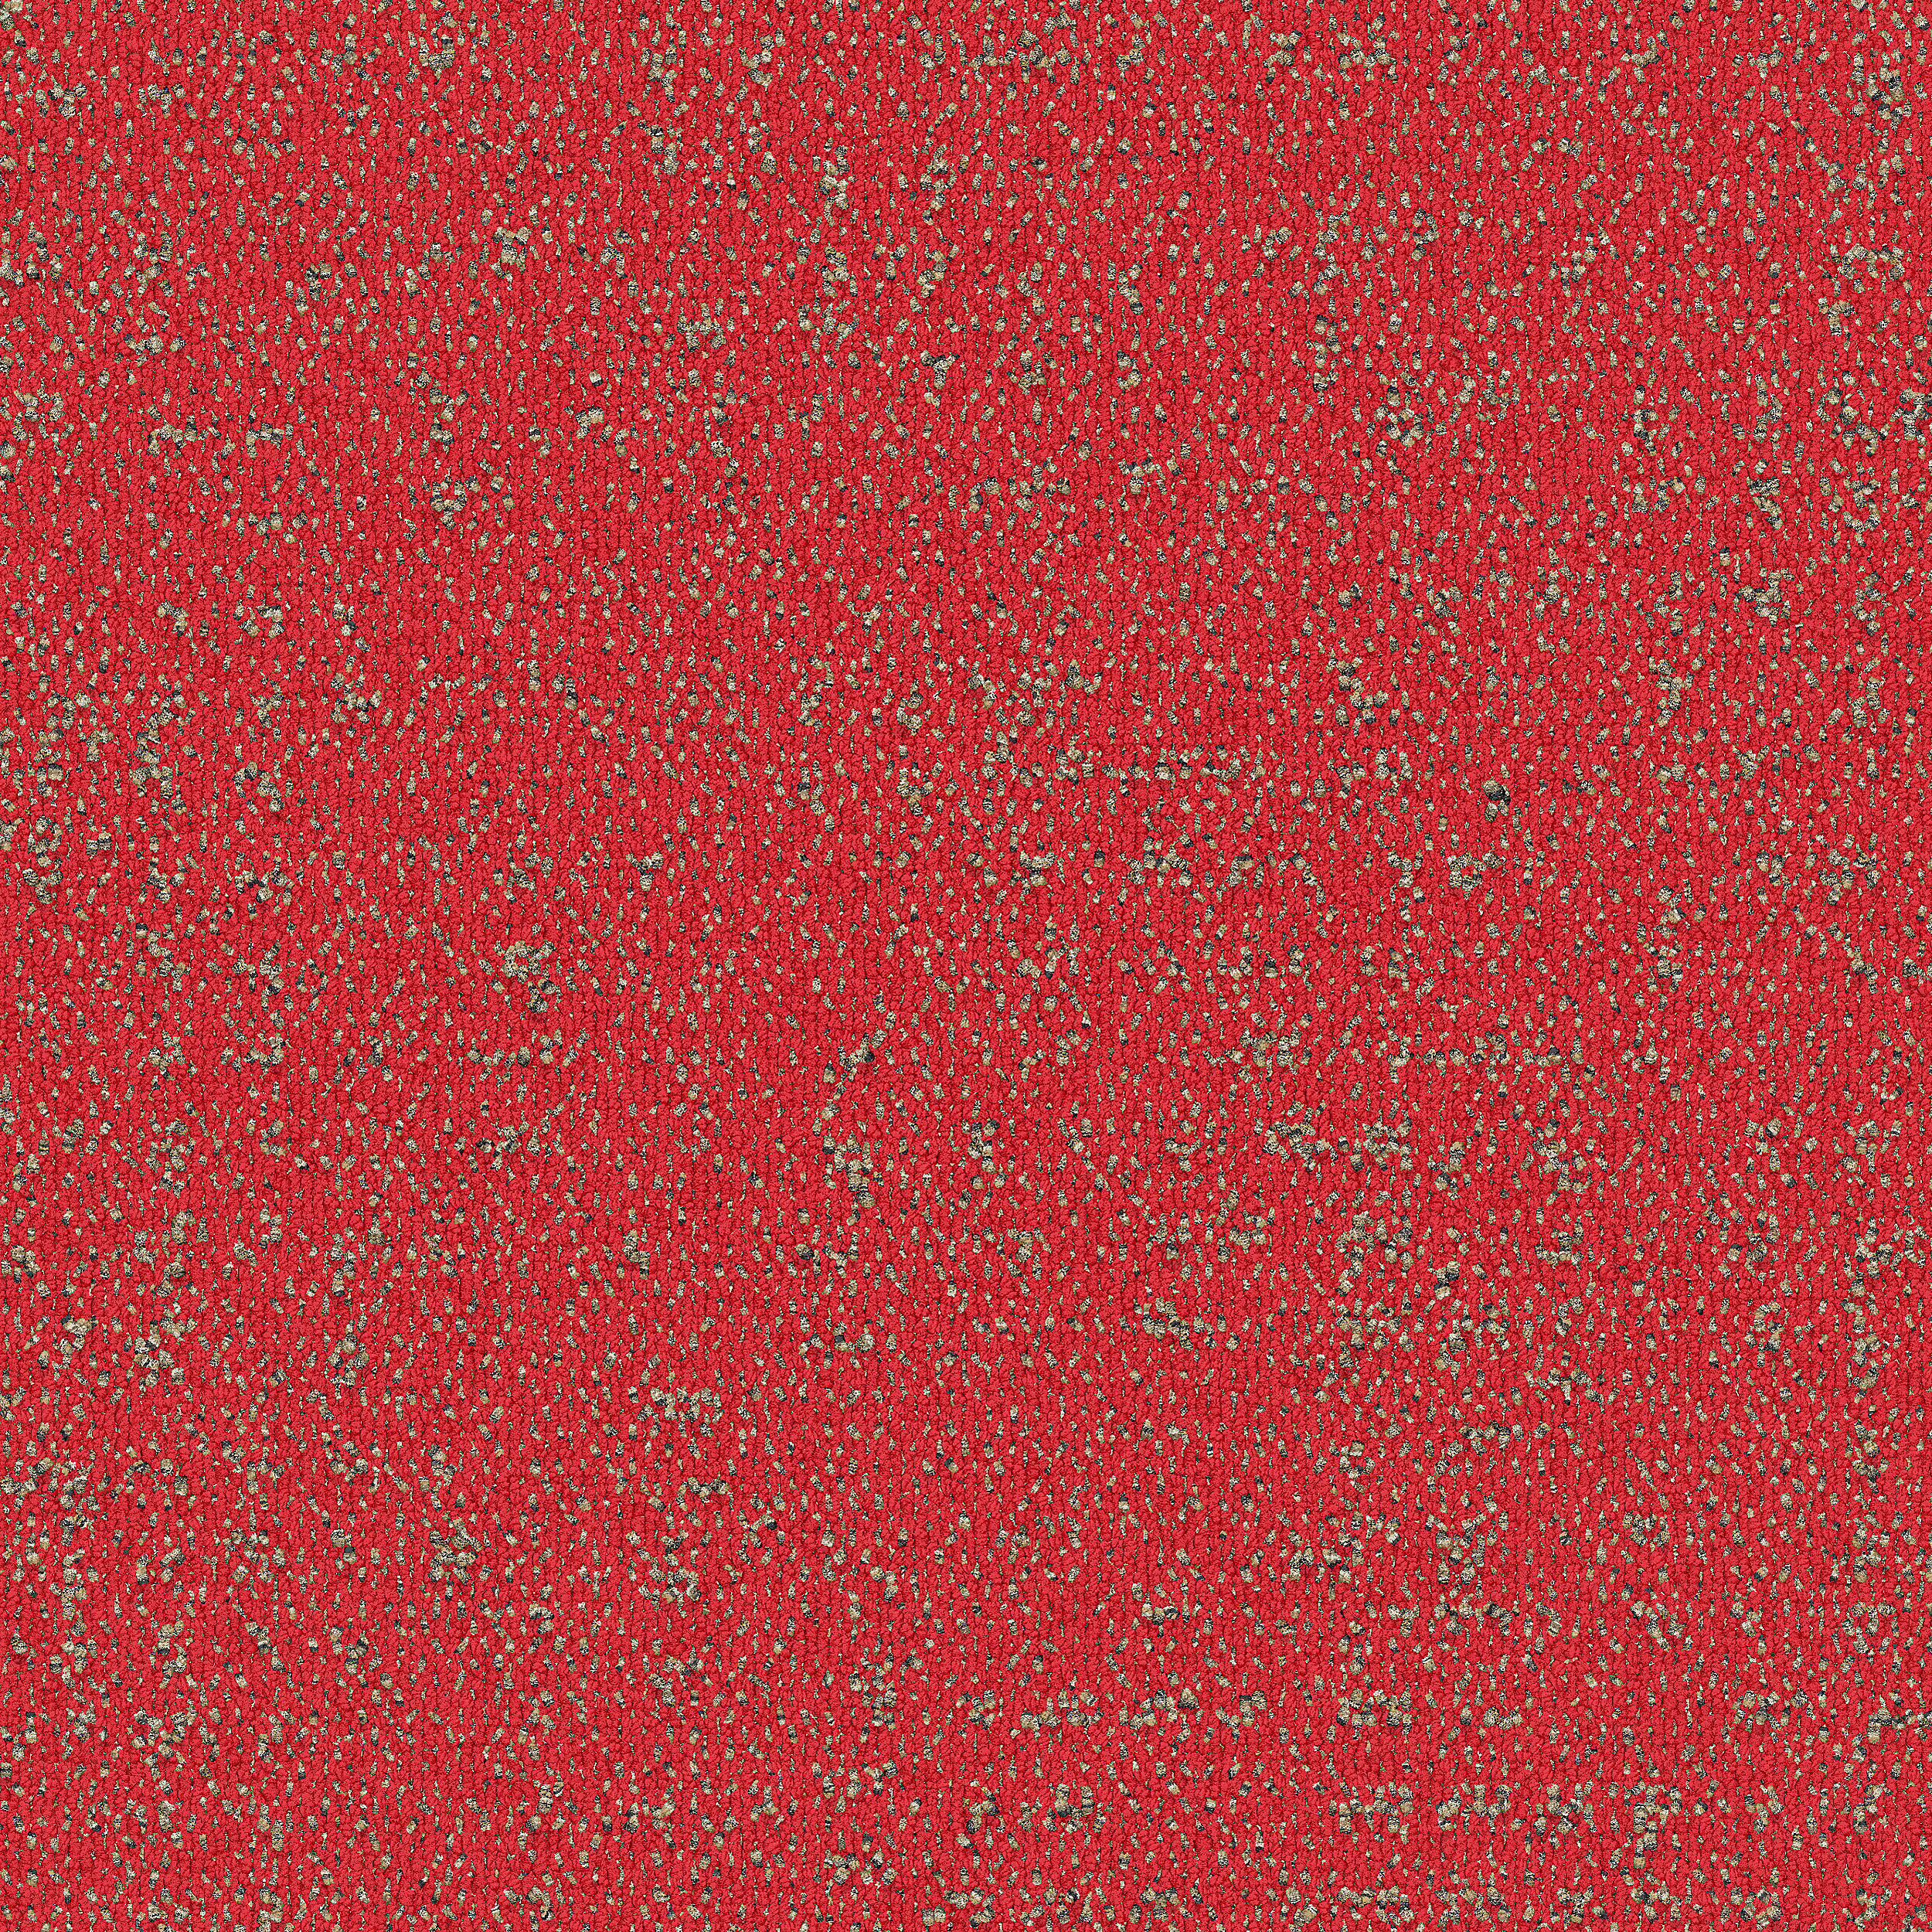 9406-002-000 Coralite